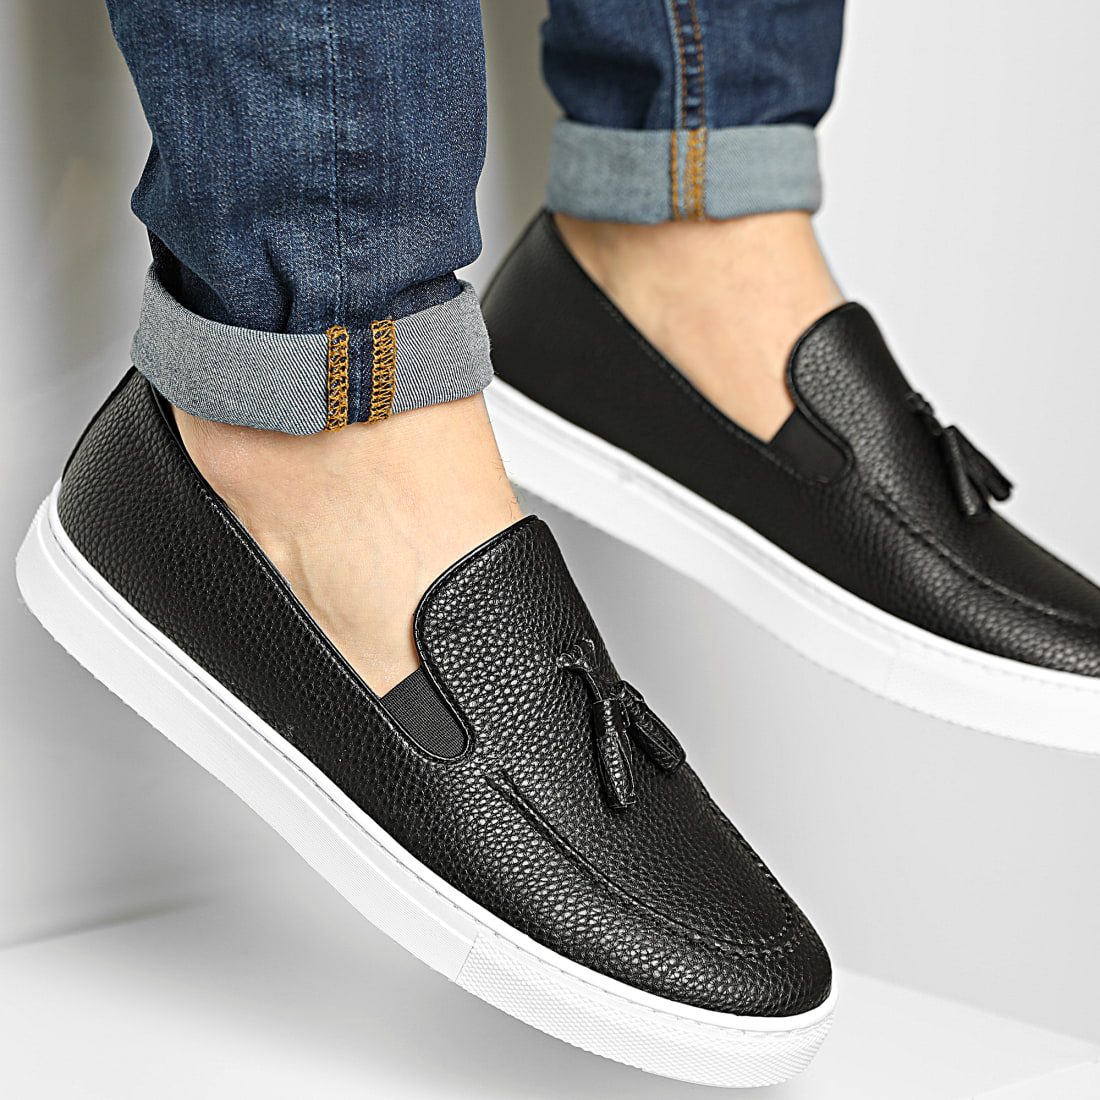 Shenduo Chaussures de Ville D7152 Mocassins pour Homme Cuir Loafers Confort